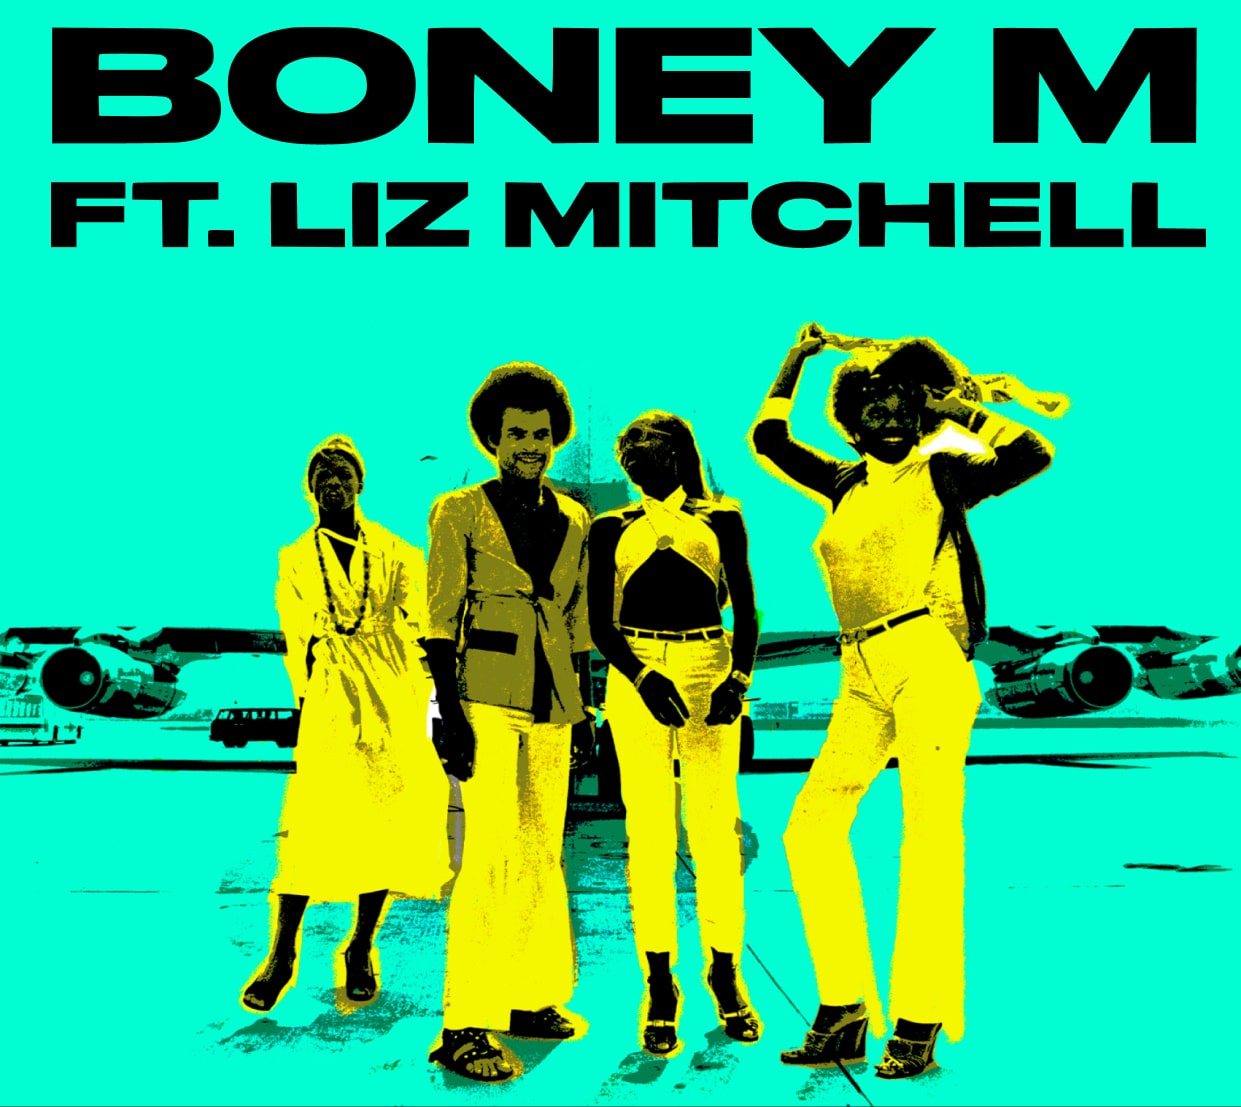 Boney M tour merch